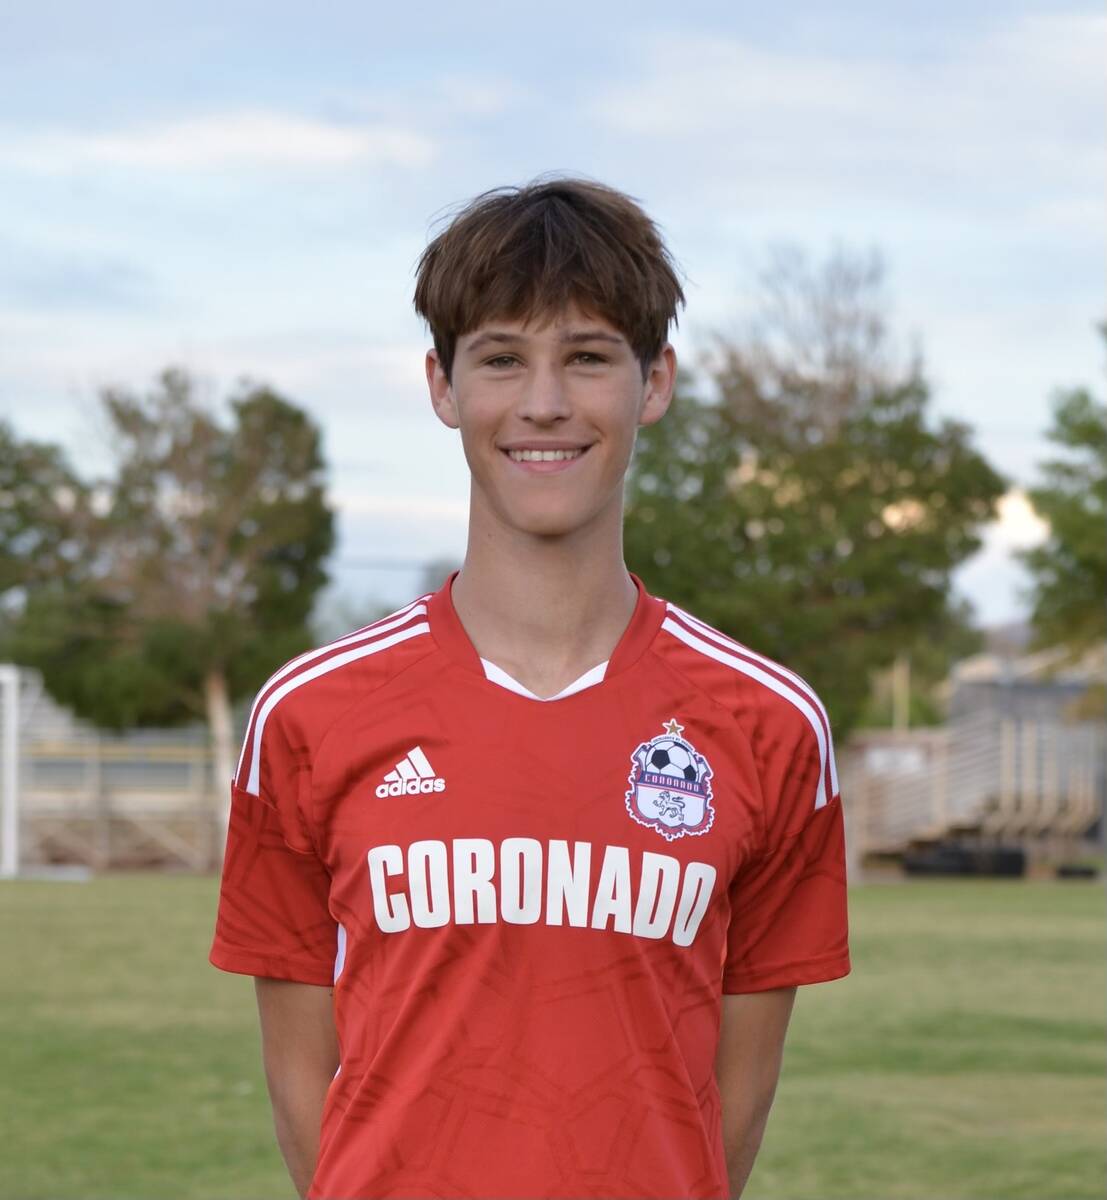 Coronado's Jaxson Findlay is a member of the Nevada Preps All-Southern Nevada boys soccer team.